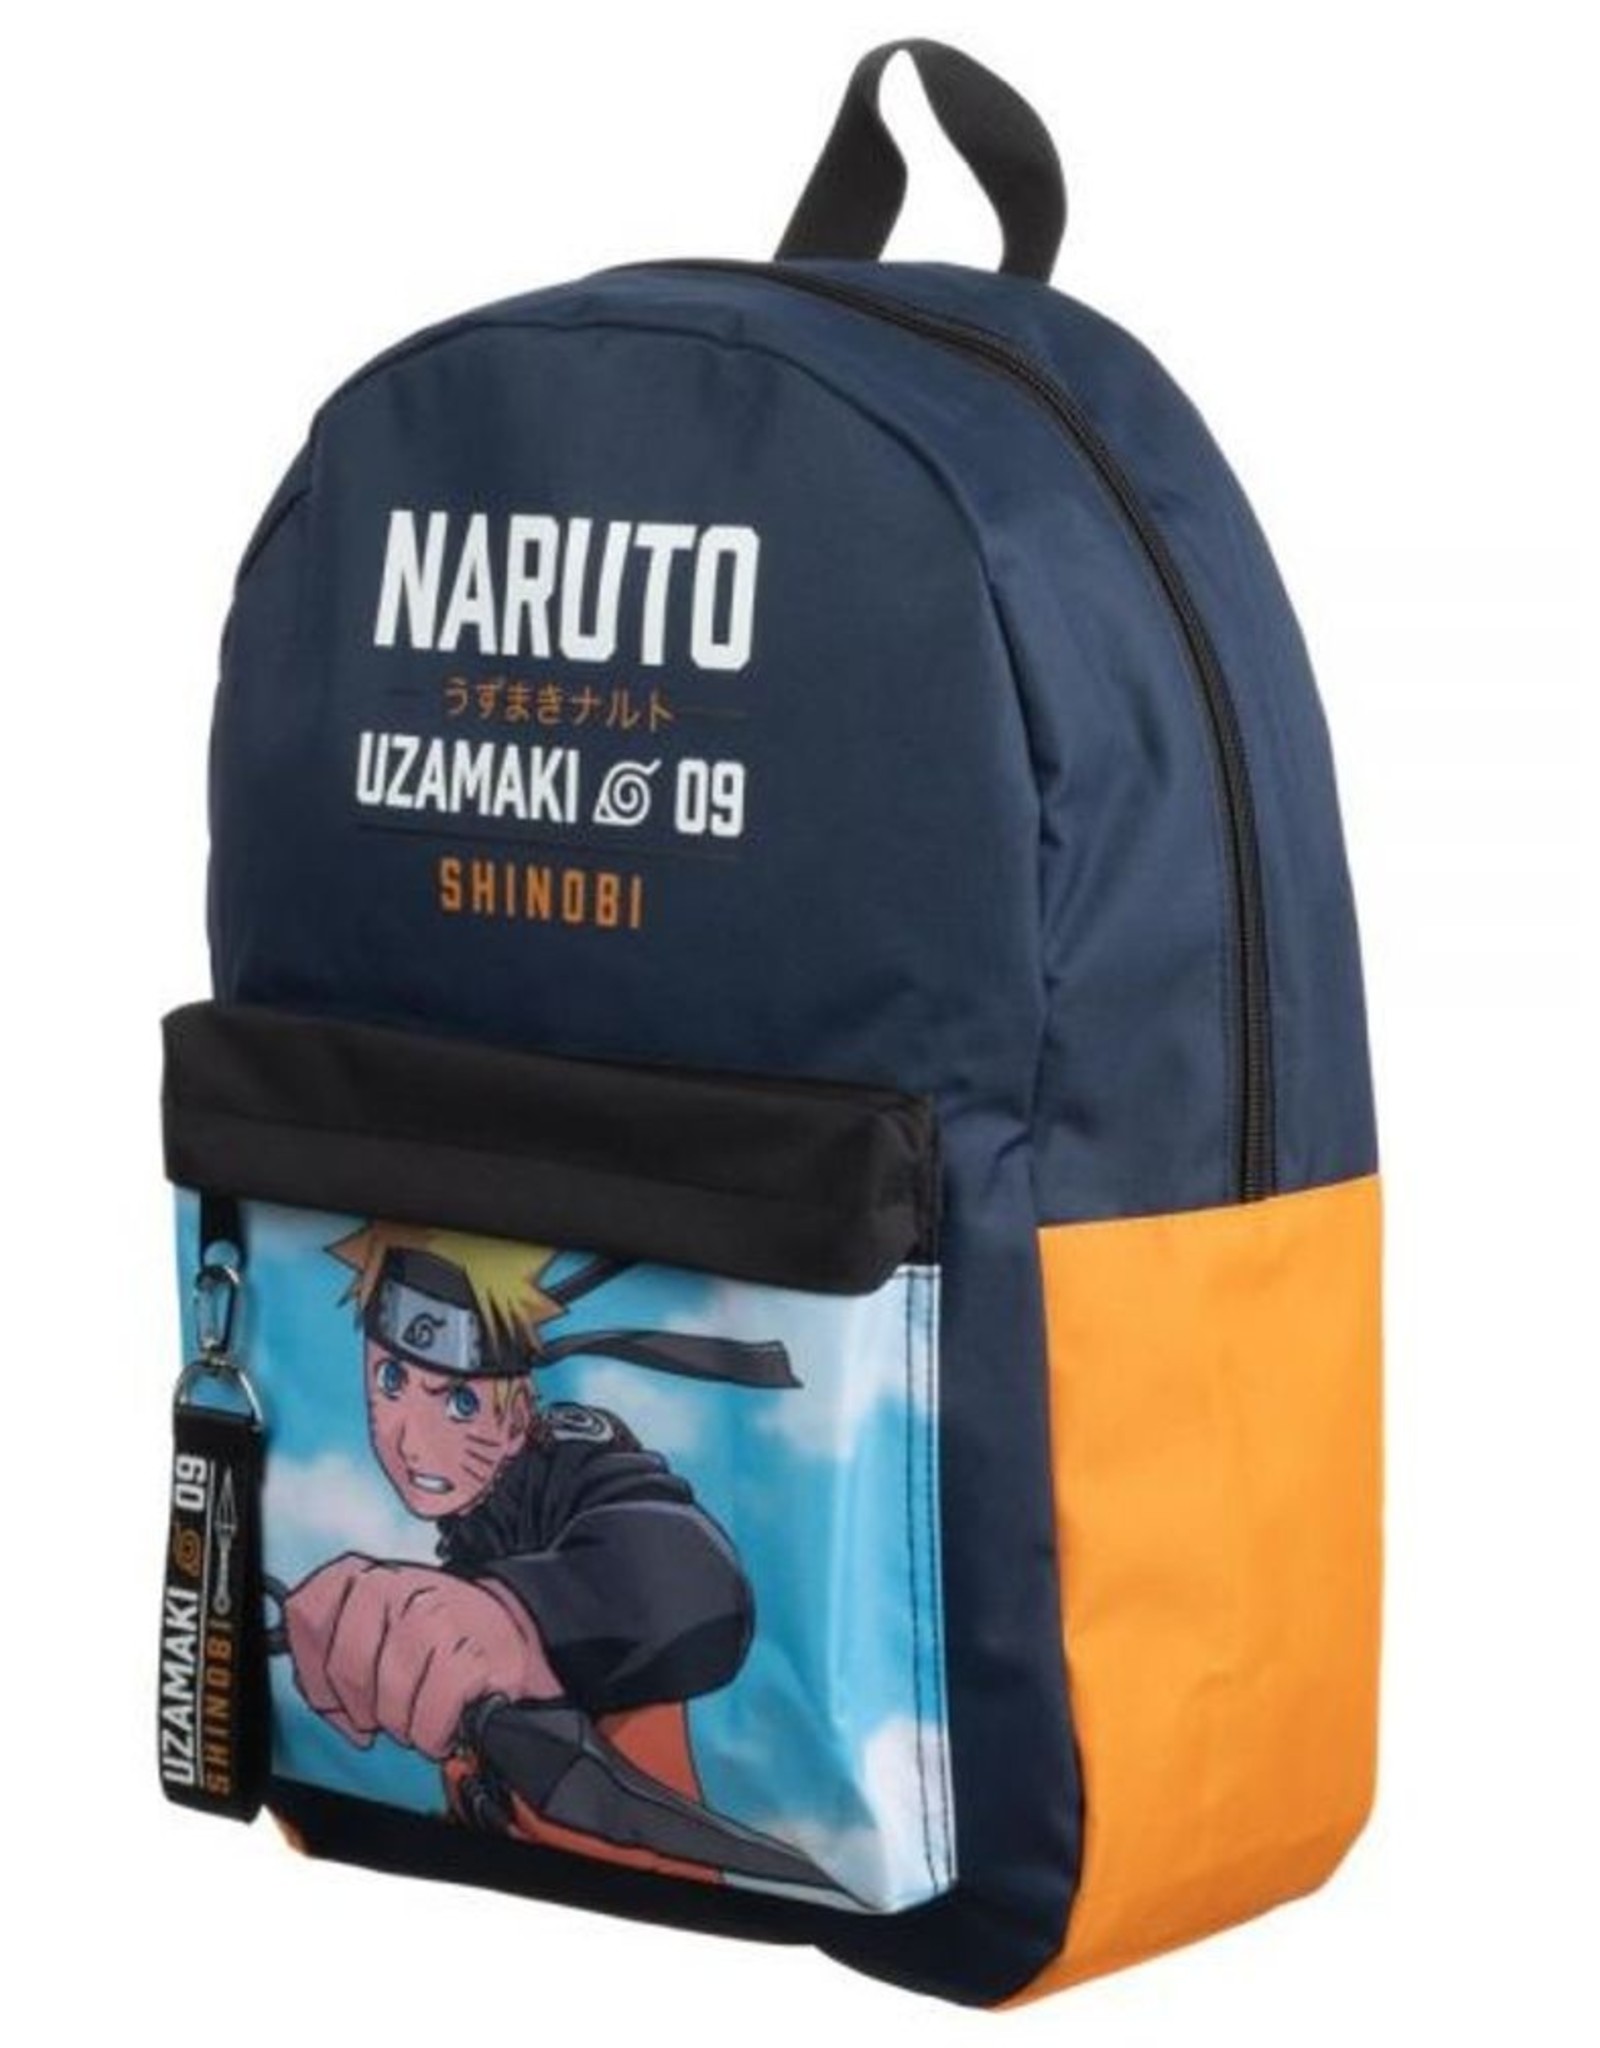 Naruto Shippuden Other Merchandise backpacks and fanny packs - Naruto Shippuden - Naruto backpack